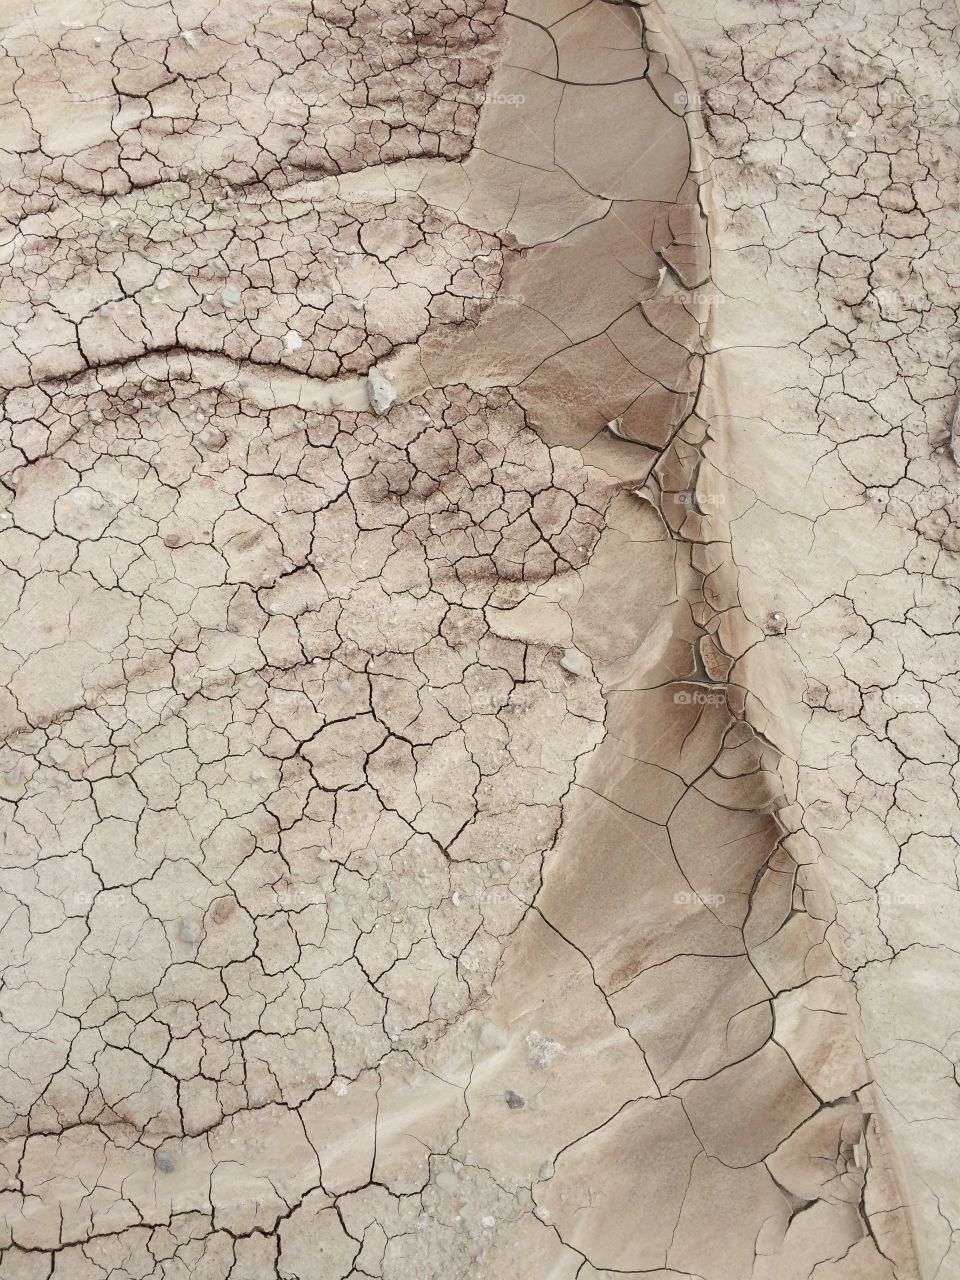 Textures - badlands . Some mud in the Badlands, South Dakota 